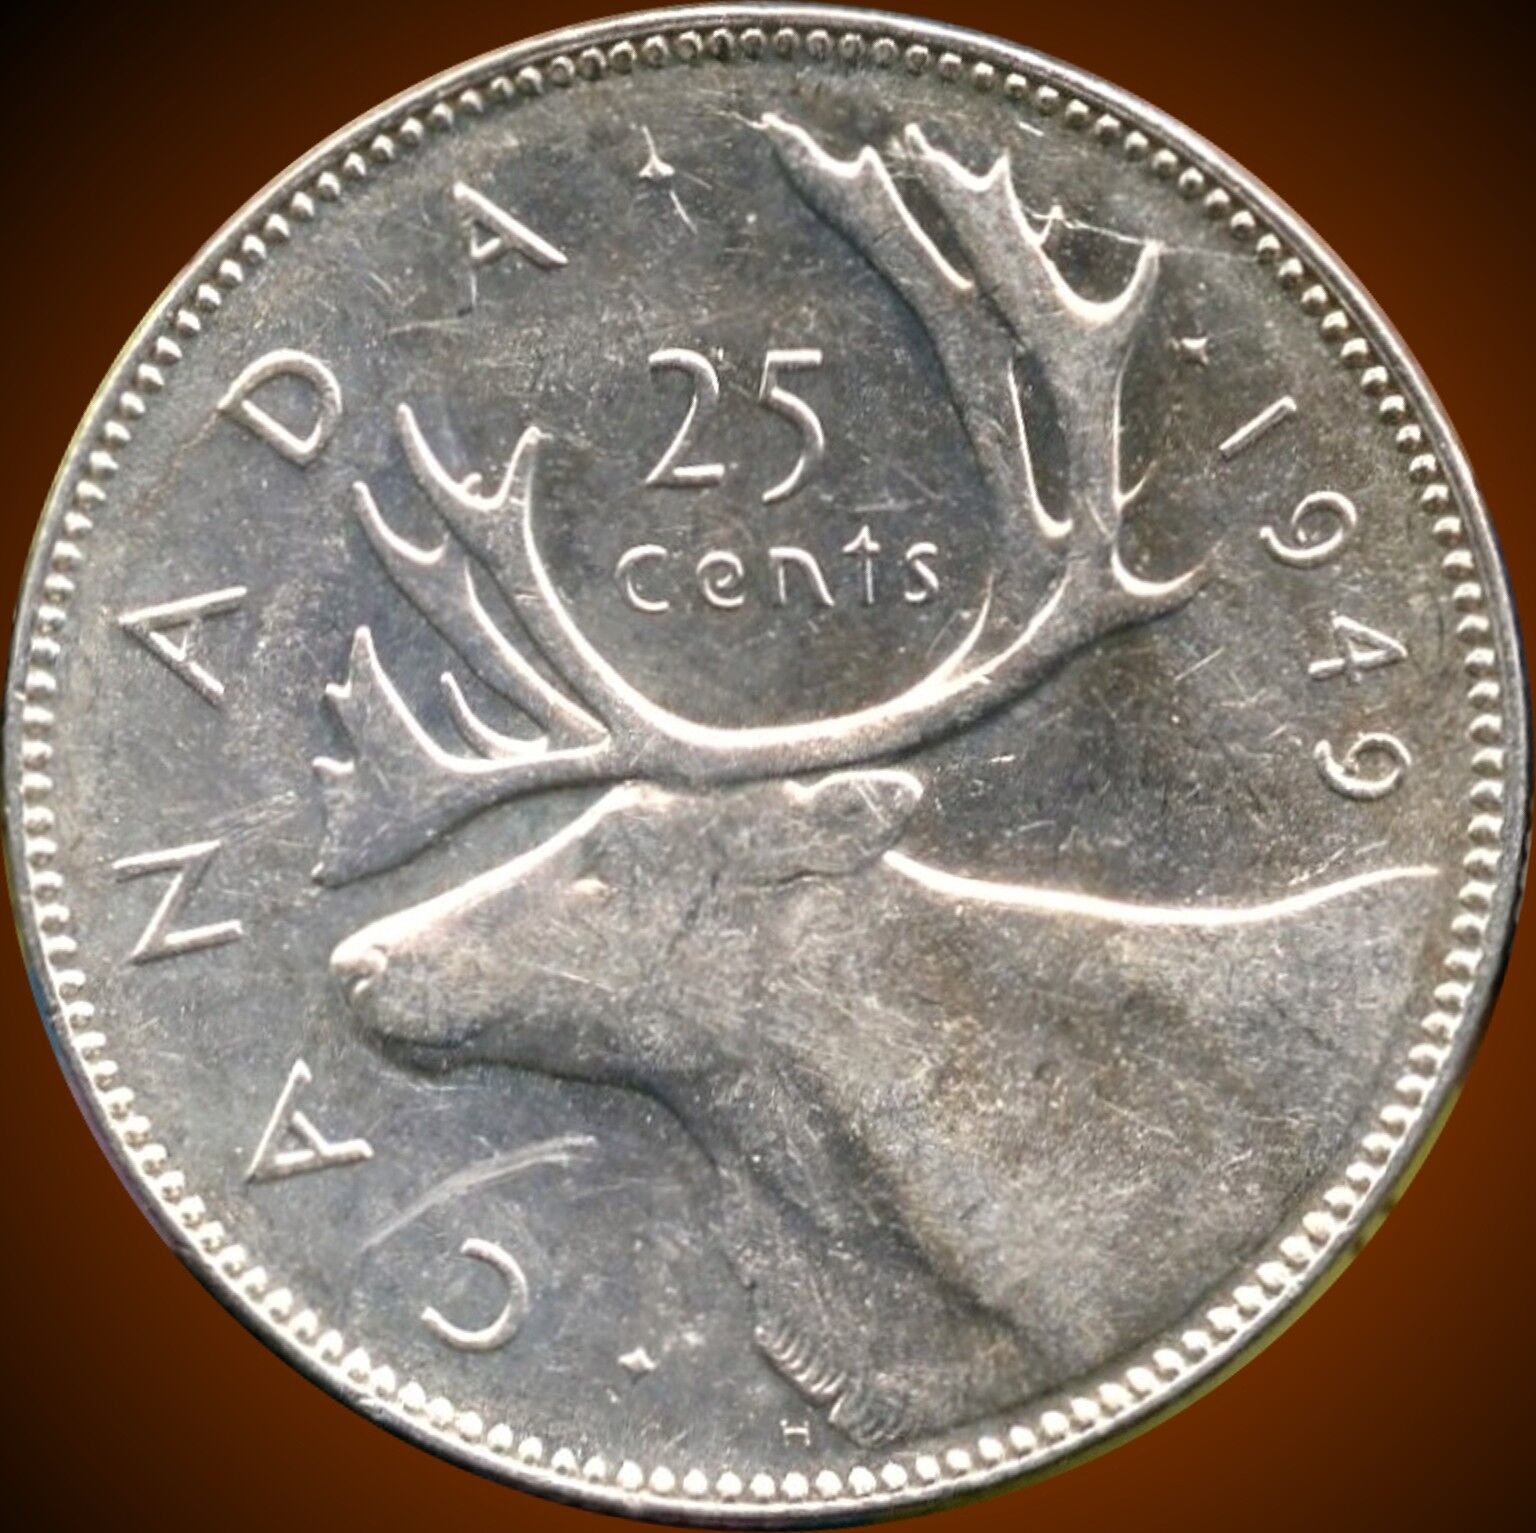 1949 Canada 25 Cent Silver Coin (5.83 Grams .800 Silver)